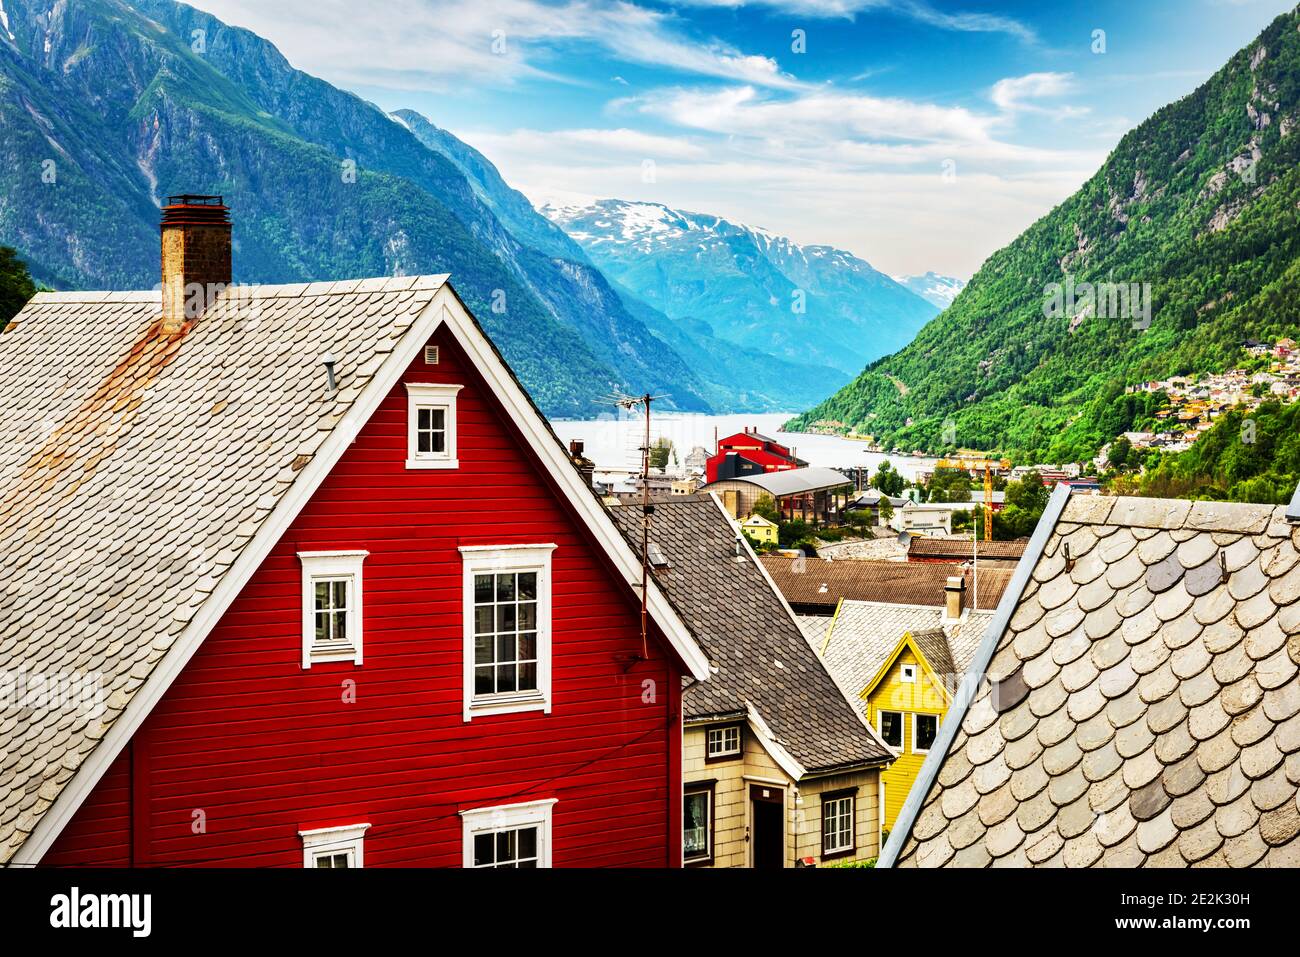 Typische norwegische Häuser in der Nähe von Fjord und schneebedeckten Bergen. Norwegen, Europa. Landschaftsfotografie Stockfoto